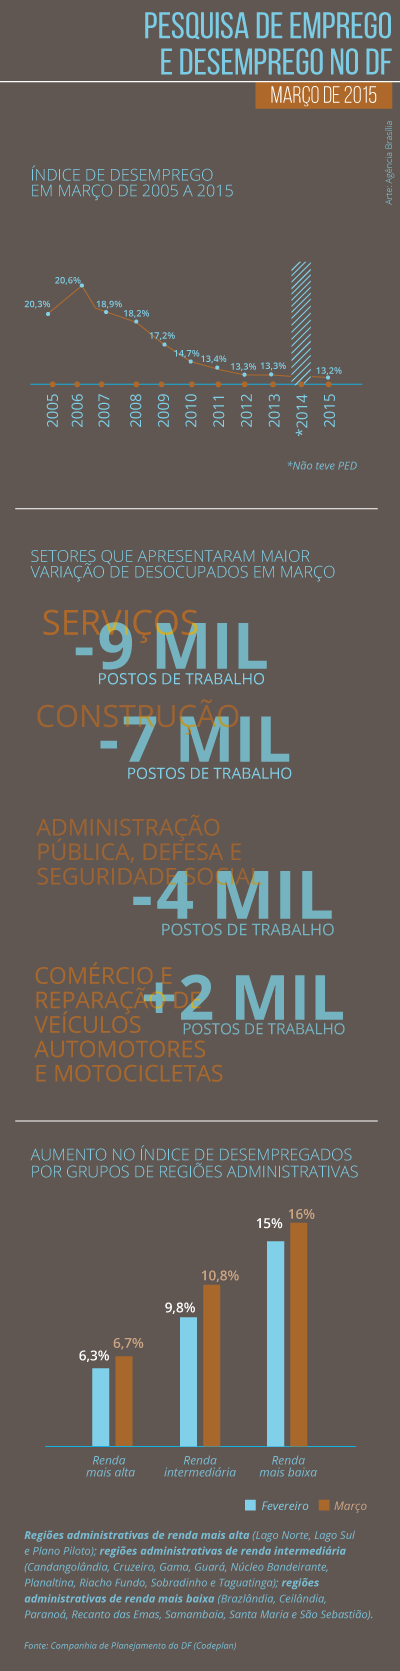 pesquisa de emprego e desempenho no df 2015 AgenciaBrasilia